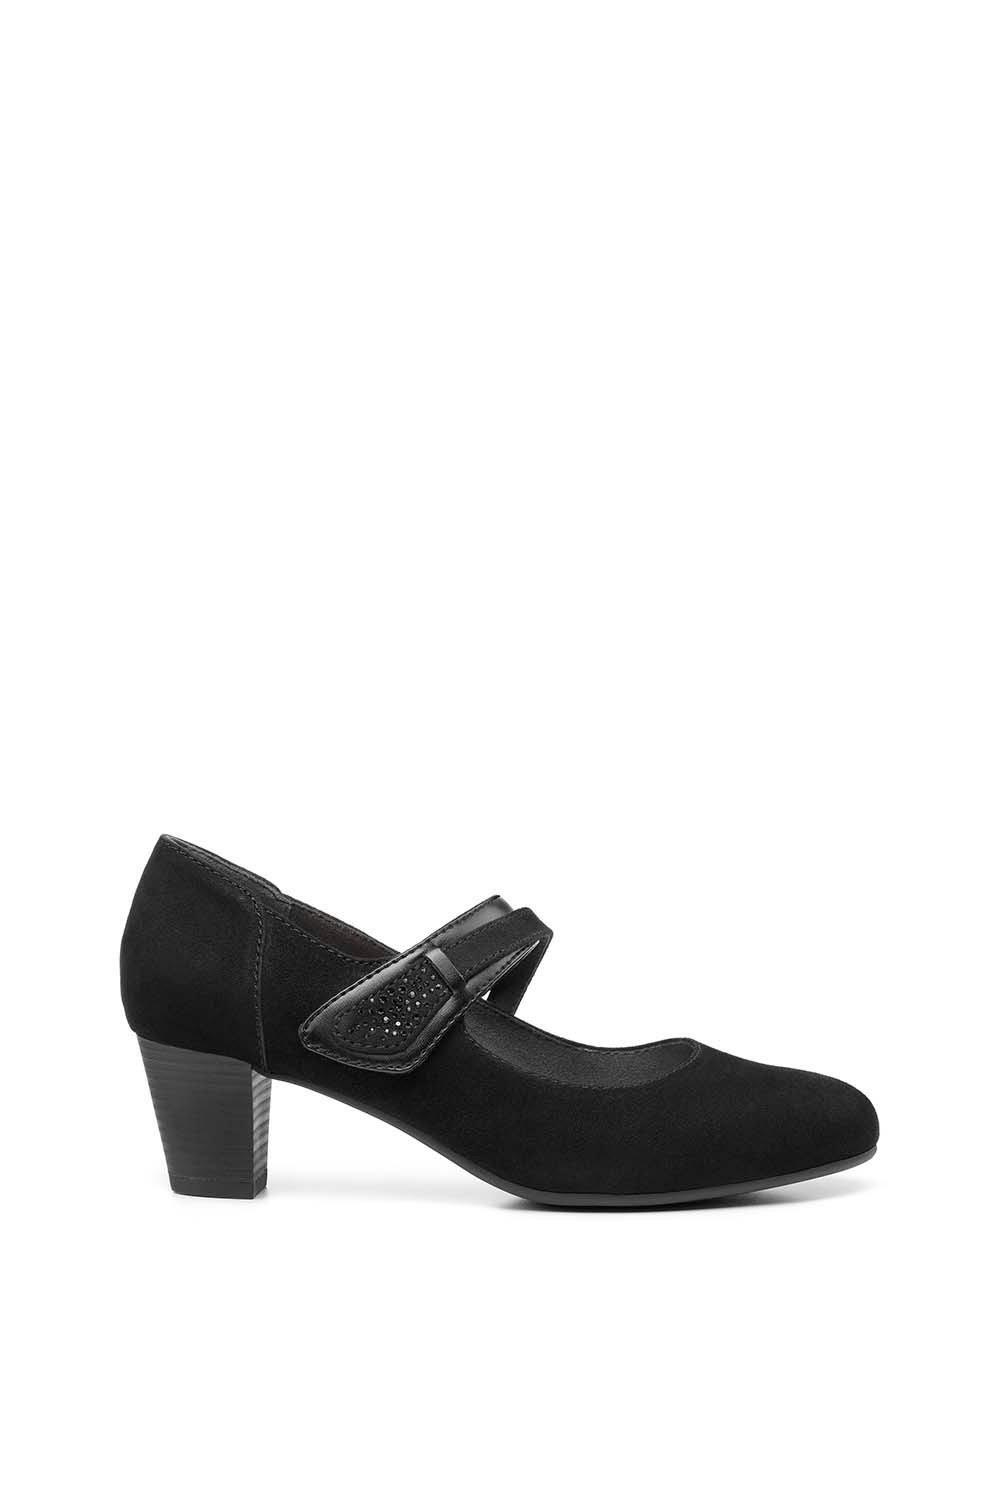 Формальная обувь «Самба» Hotter, черный цена и фото